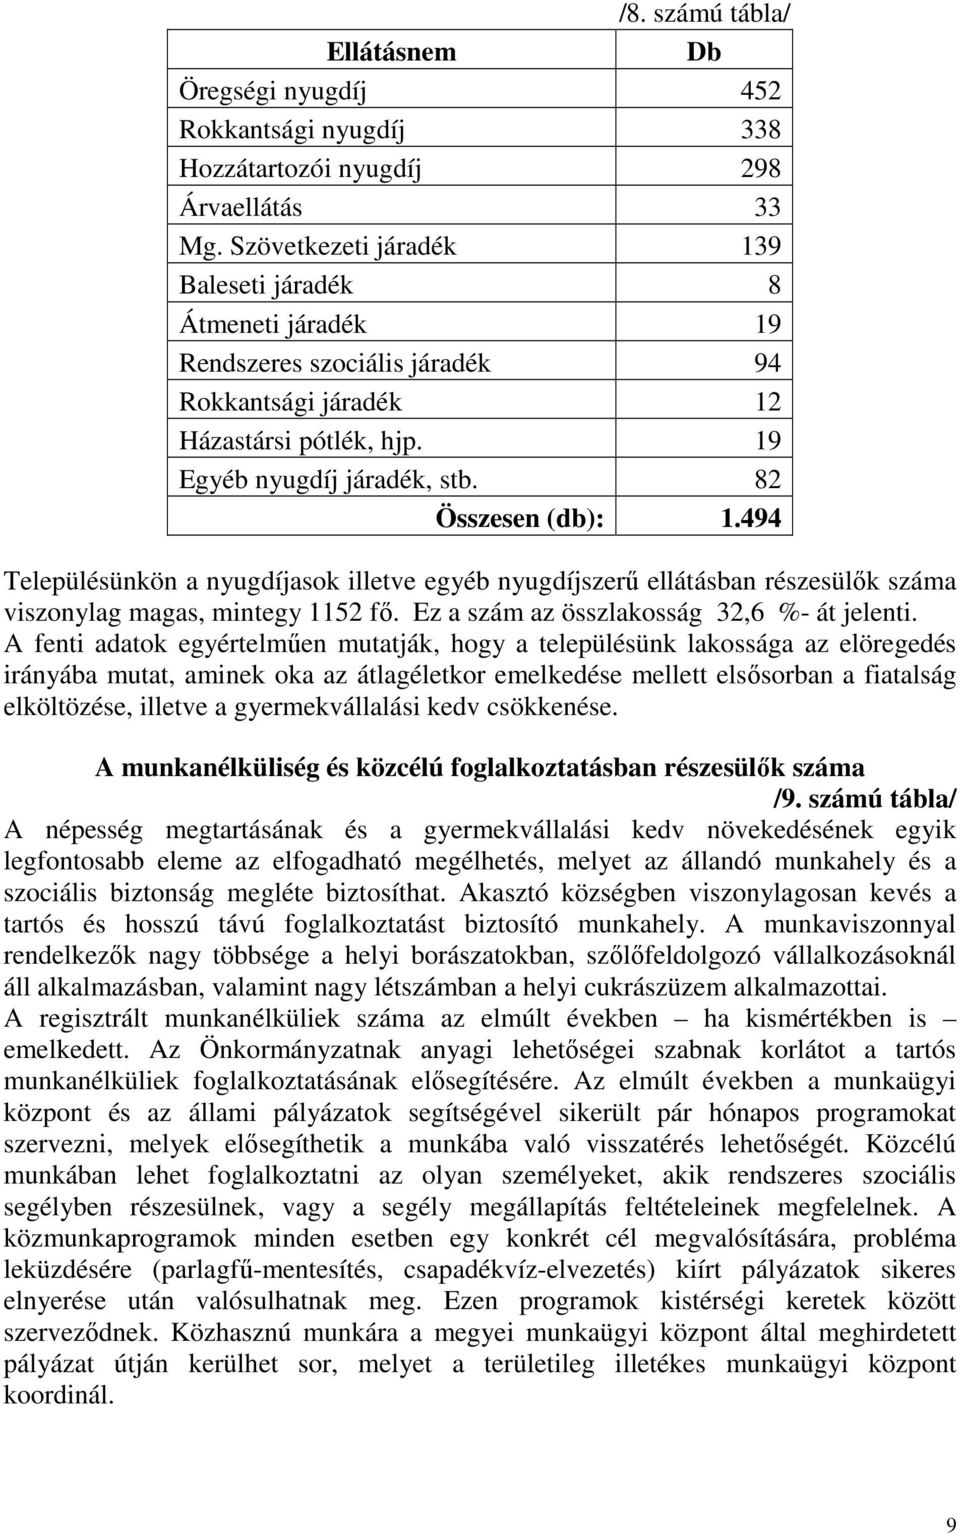 494 Településünkön a nyugdíjasok illetve egyéb nyugdíjszerő ellátásban részesülık száma viszonylag magas, mintegy 1152 fı. Ez a szám az összlakosság 32,6 %- át jelenti.